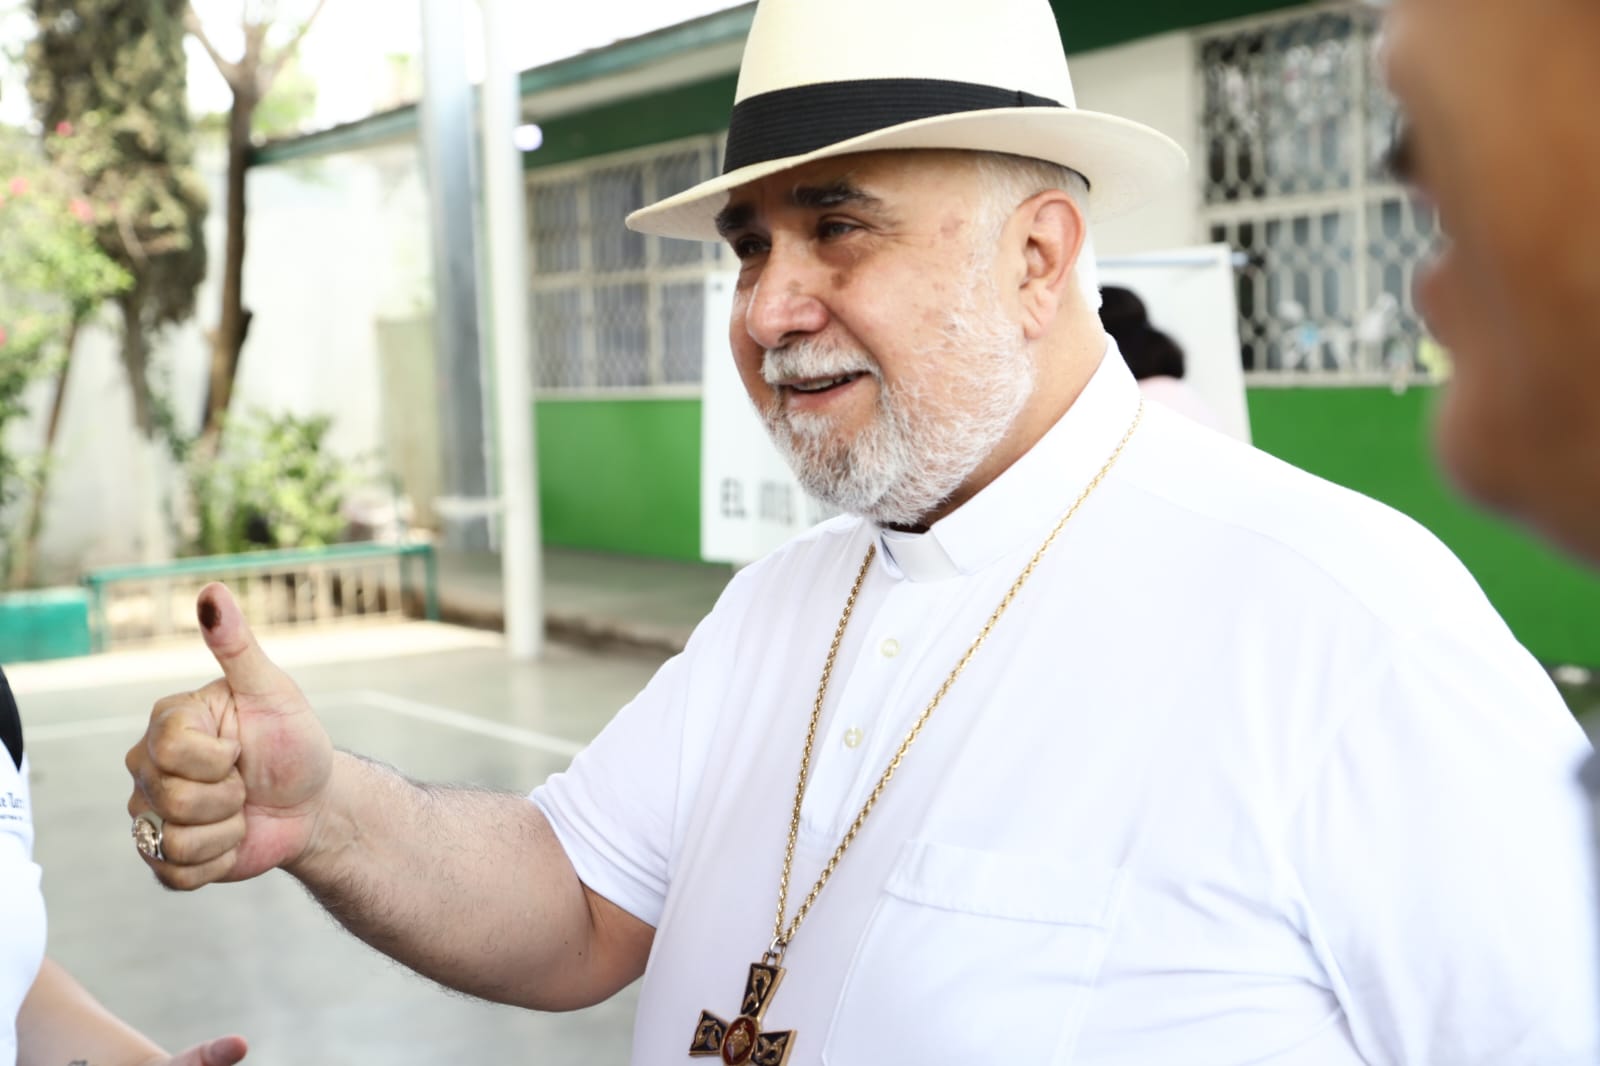 El Obispo de Gómez Palacio llama a la participación; reflexiona sobre responsabilidad de políticos